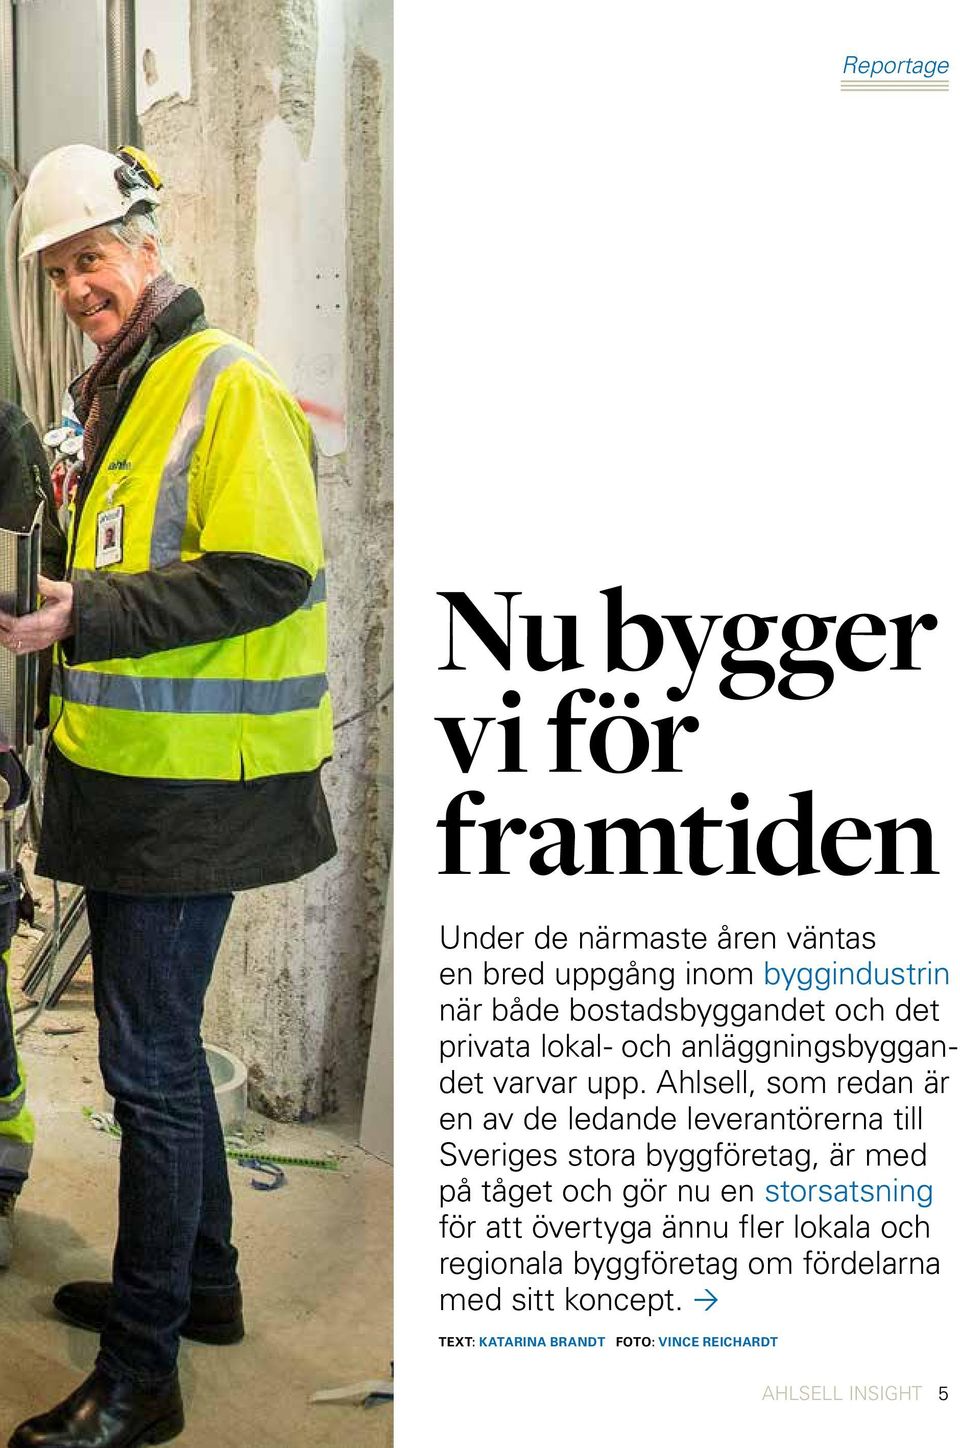 Ahlsell, som redan är en av de ledande leverantörerna till Sveriges stora byggföretag, är med på tåget och gör nu en